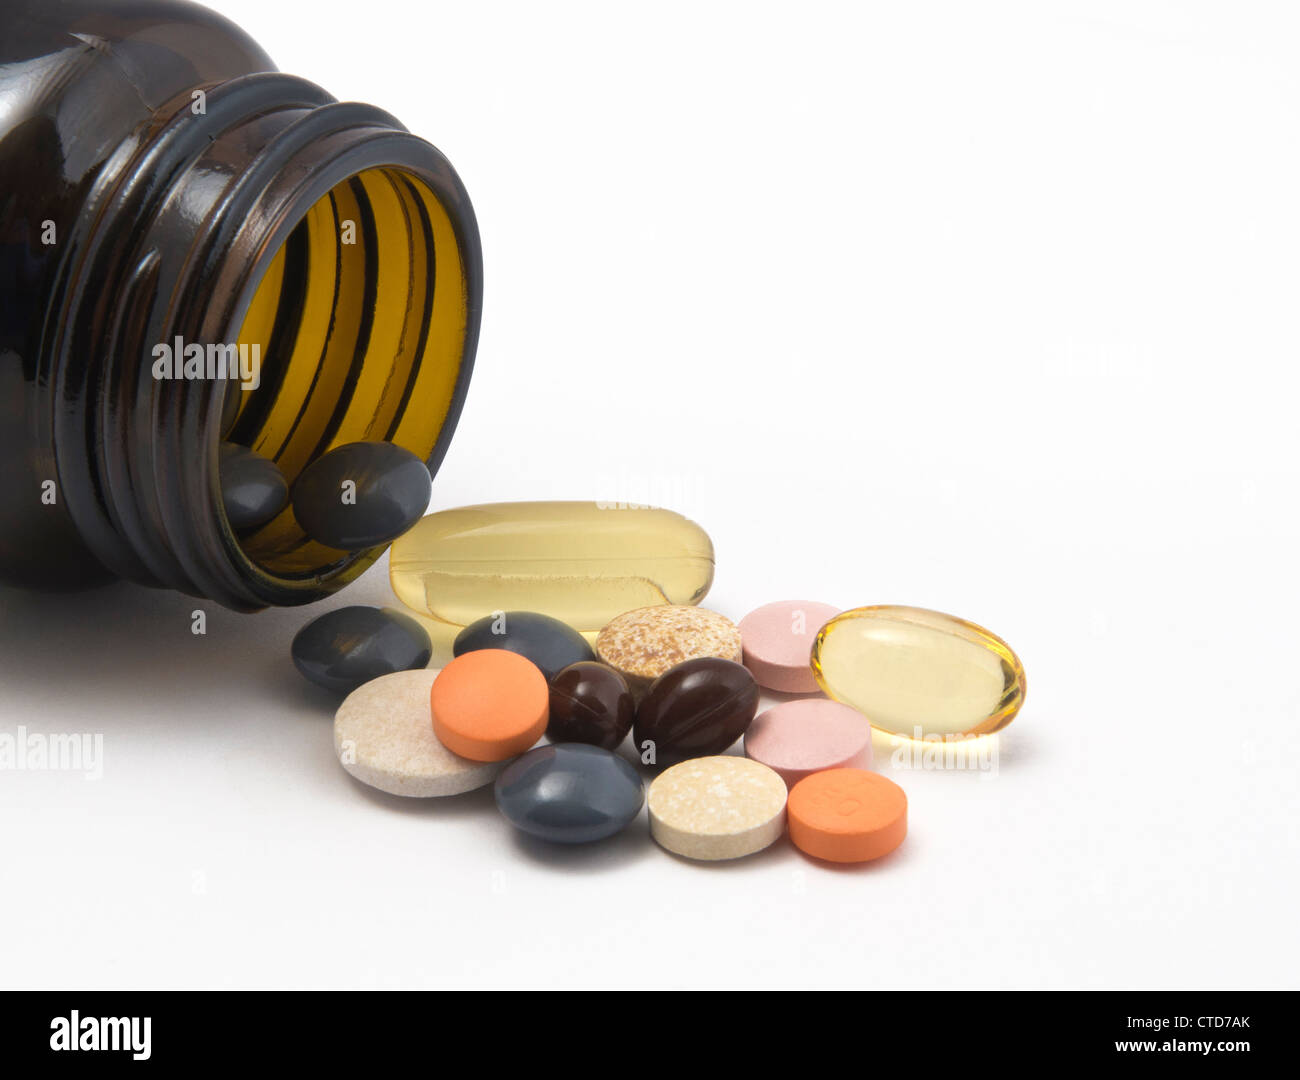 Cóctel de pastillas. Se compone de varios suplementos para la salud + medicamentos para tratar la presión arterial alta (también conocida como hipertensión). Foto de stock